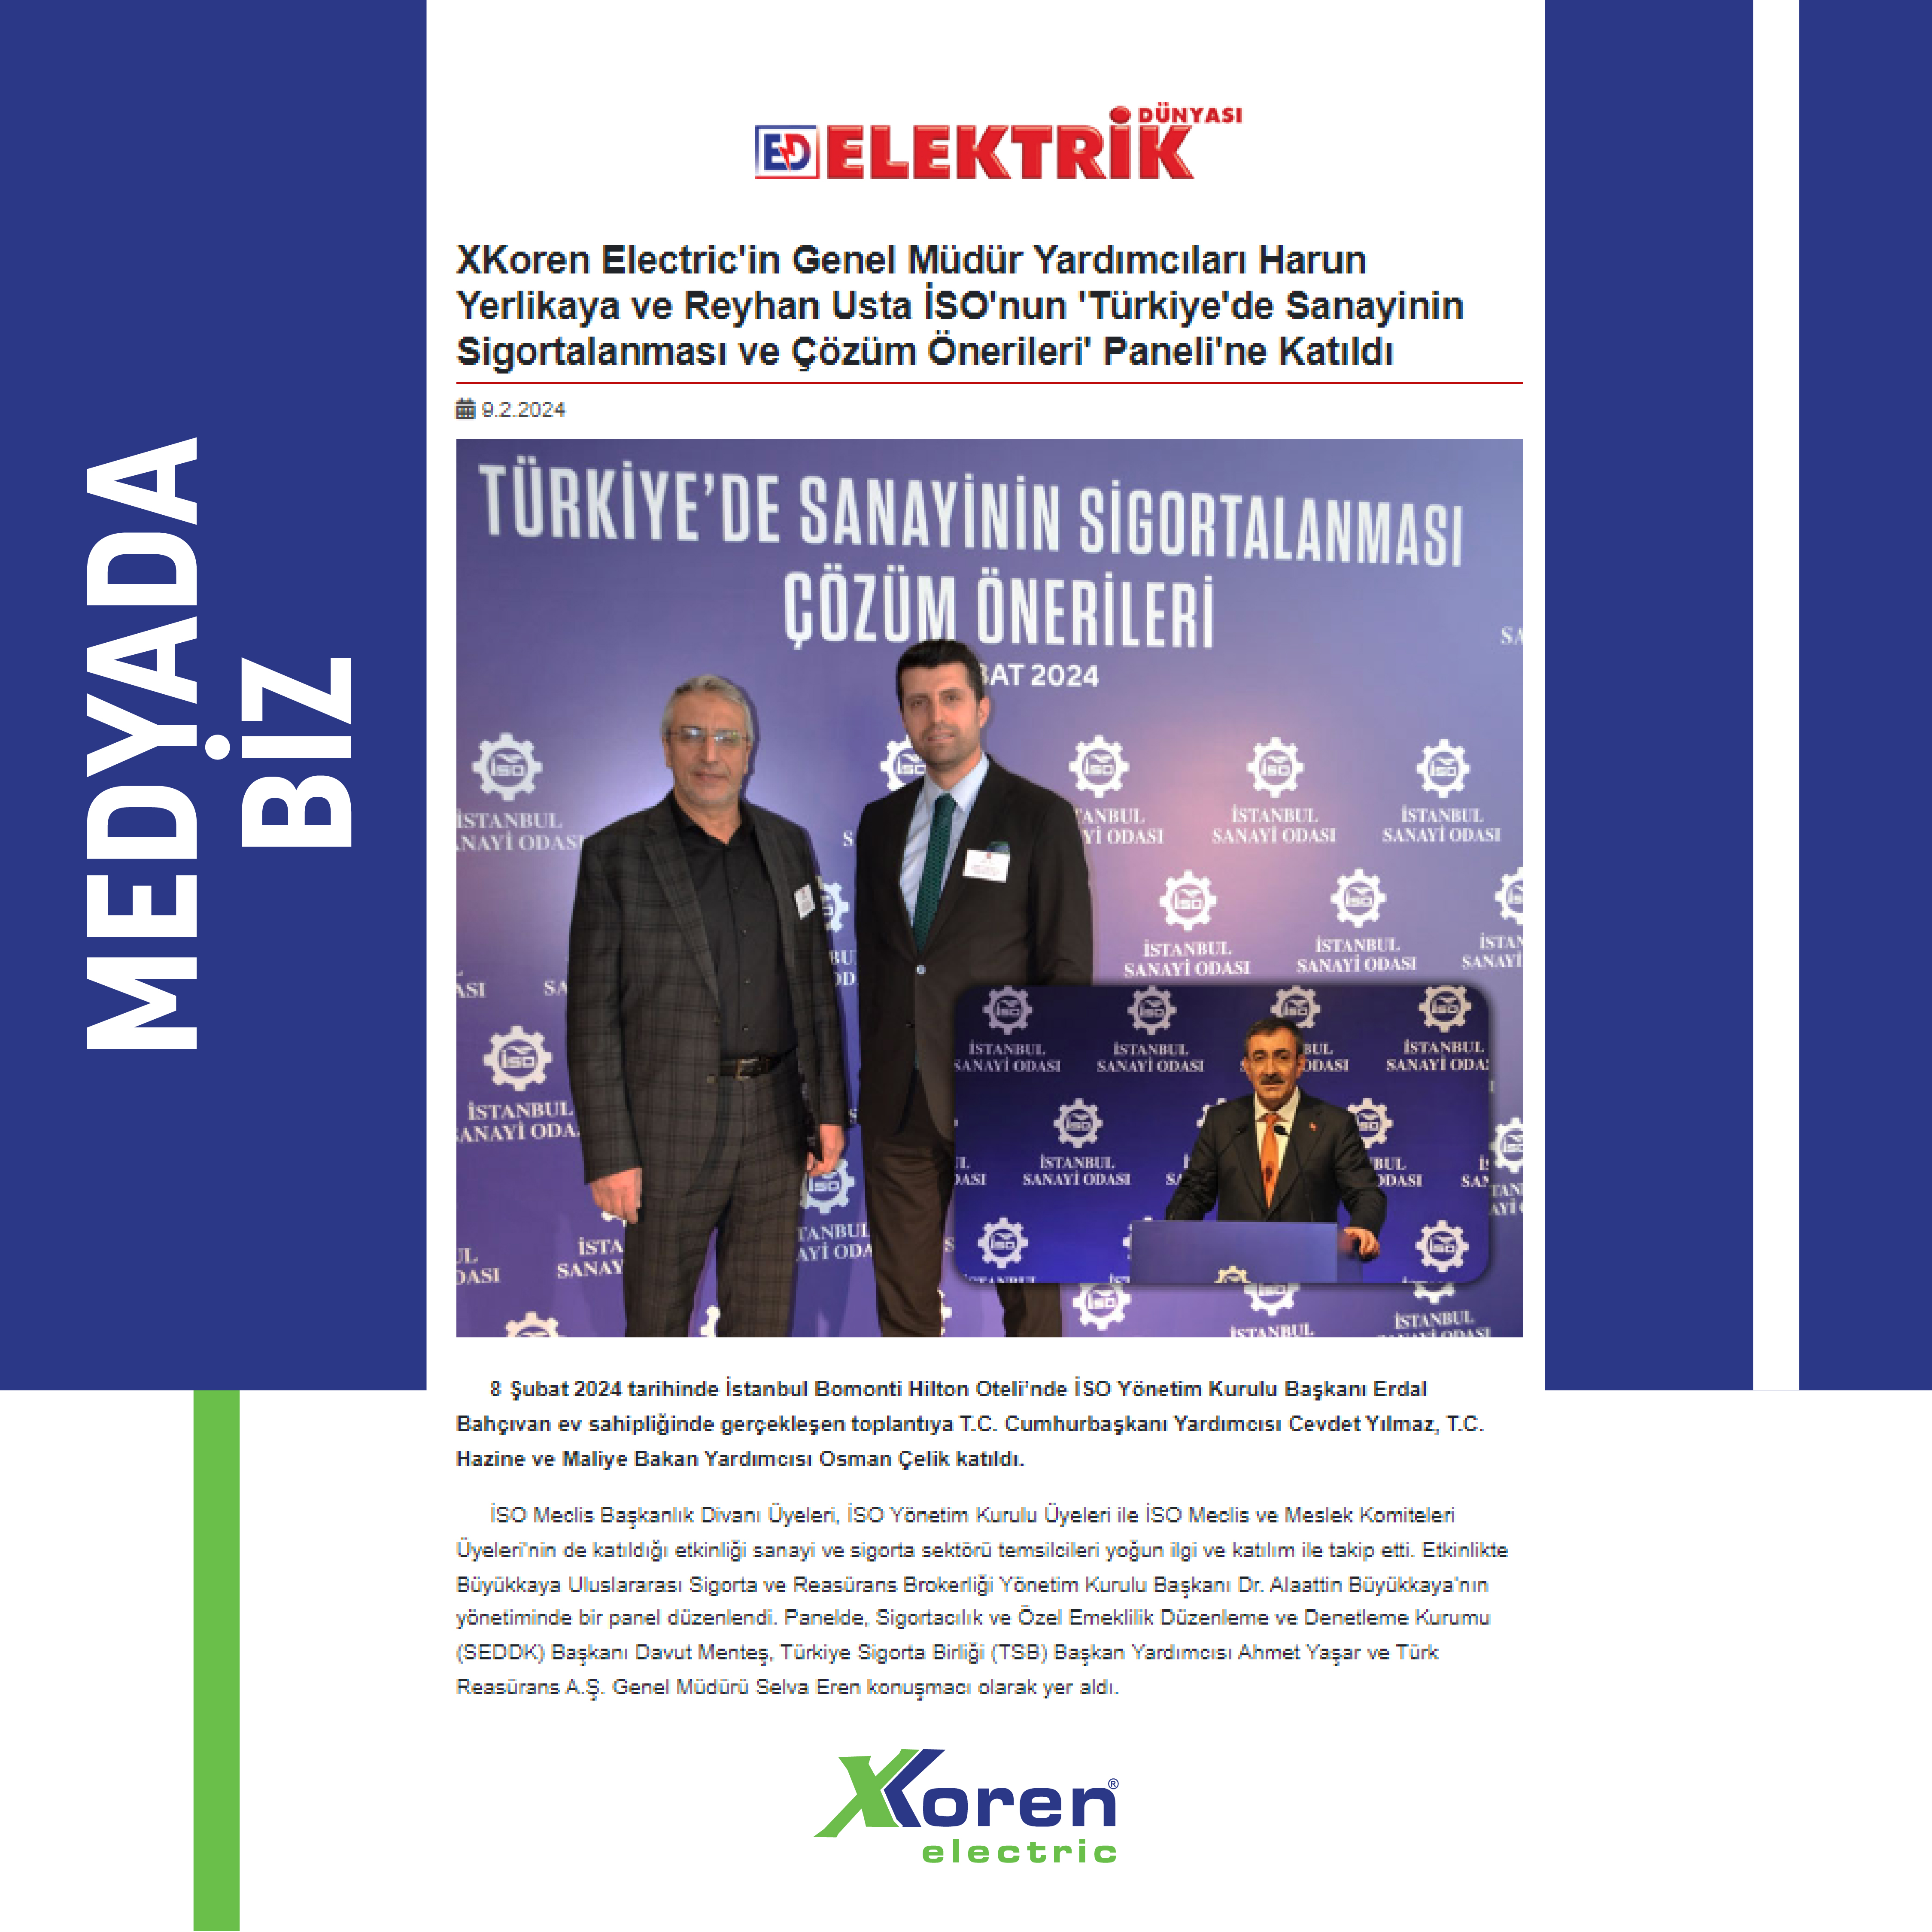 XKoren Electric'in Genel Müdür Yardımcıları Harun Yerlikaya ve Reyhan Usta İSO'nun 'Türkiye'de Sanayinin Sigortalanması ve Çözüm Önerileri' Paneli'ne Katıldı